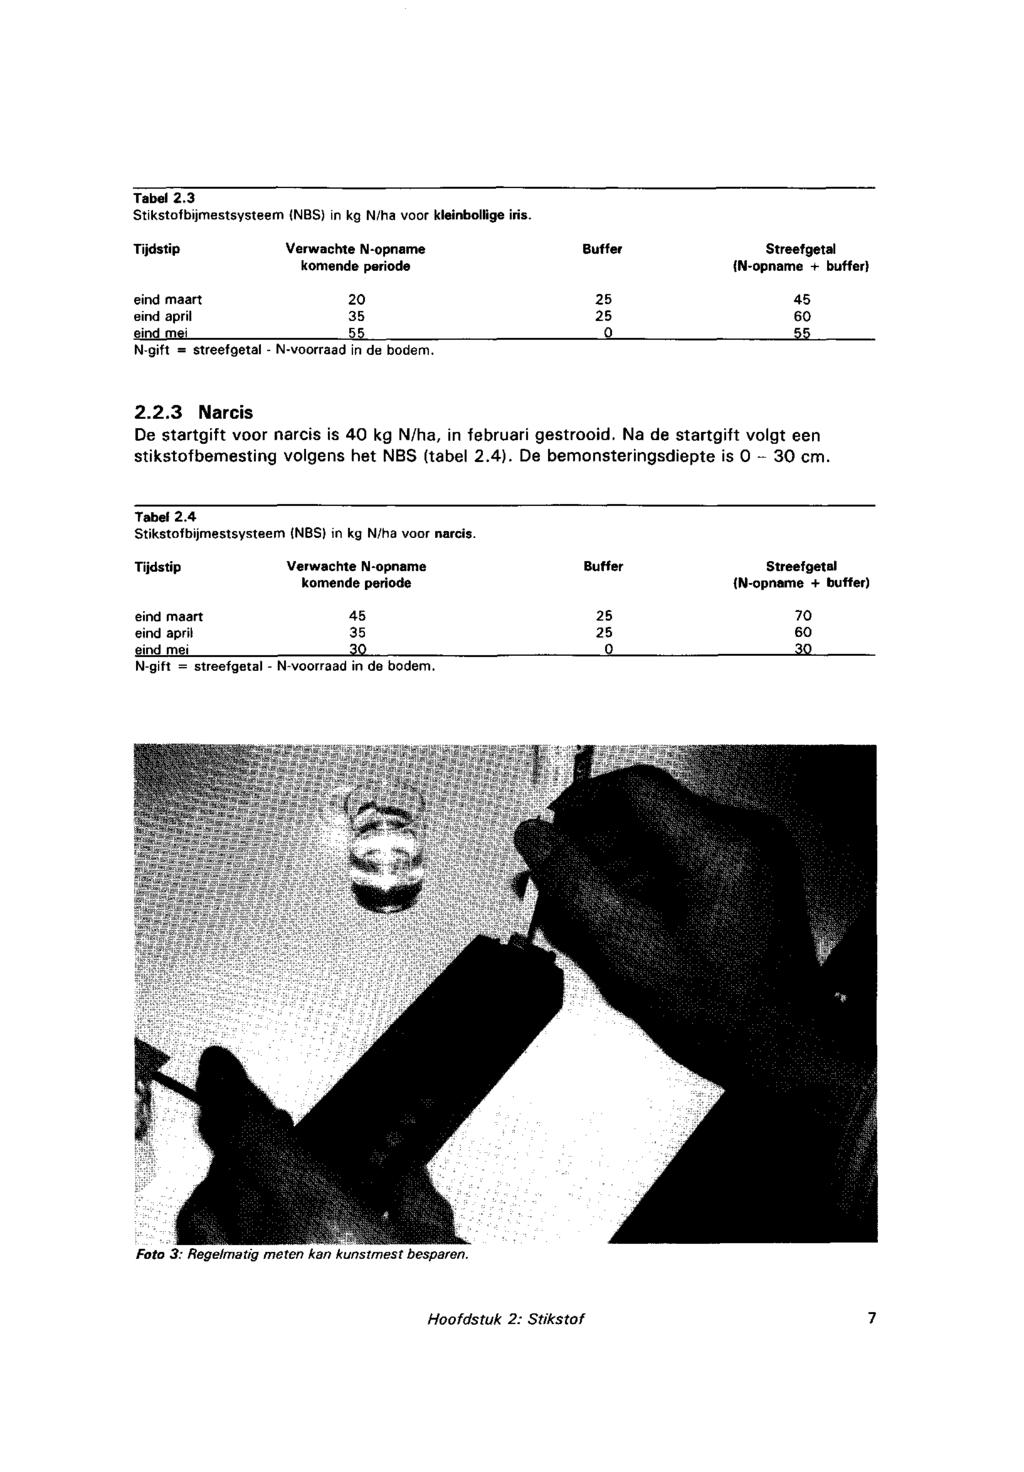 Tabel 2.3 Stikstofbijmestsysteem (NBS) inkgn/ha voor kleinbollige iris.